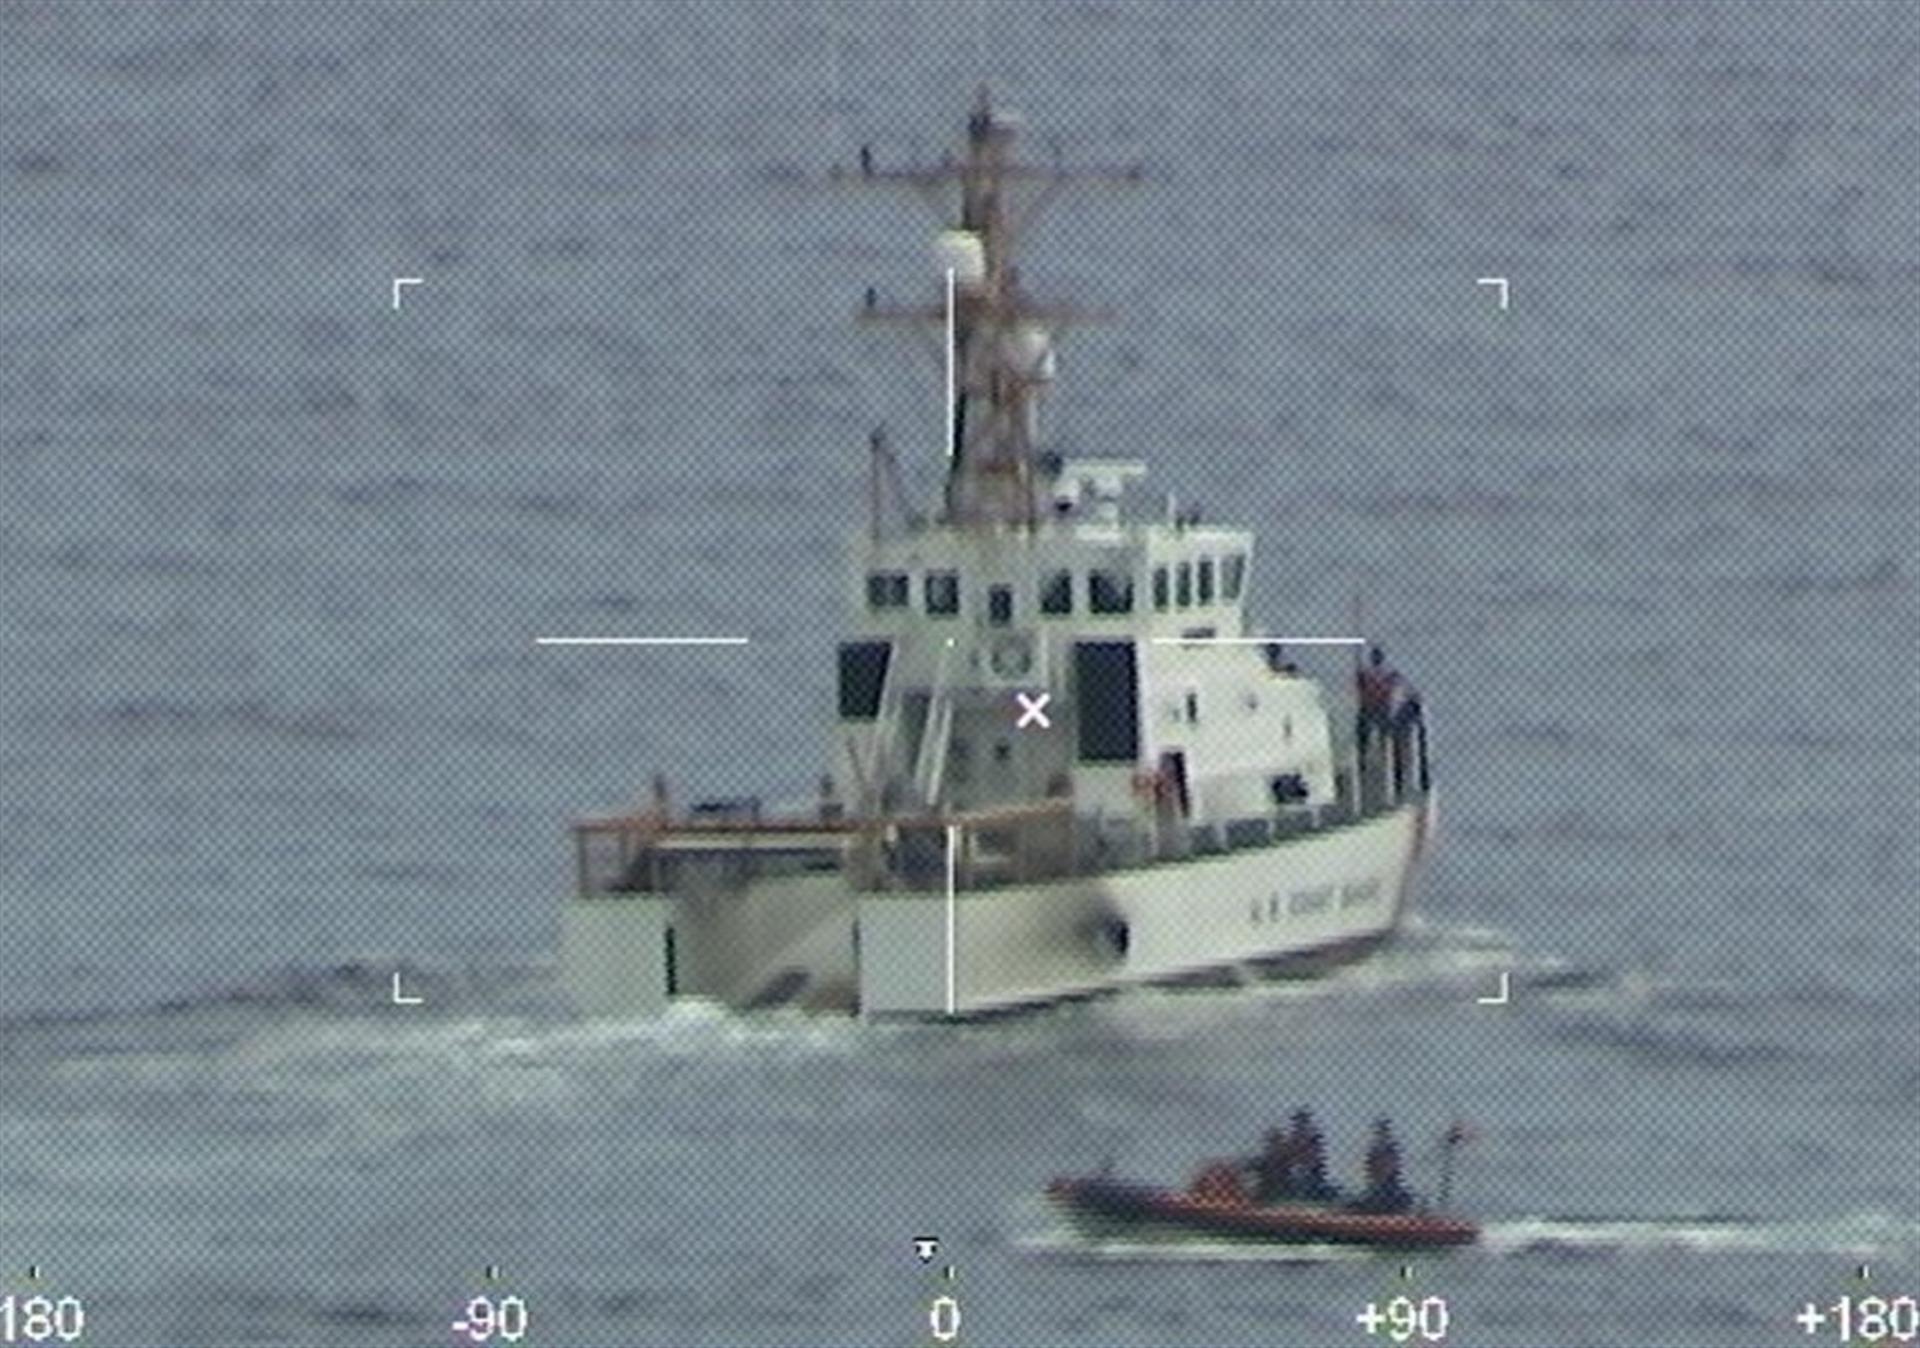 Continúa la búsqueda de 38 personas tras naufragio frente a las costas de Florida